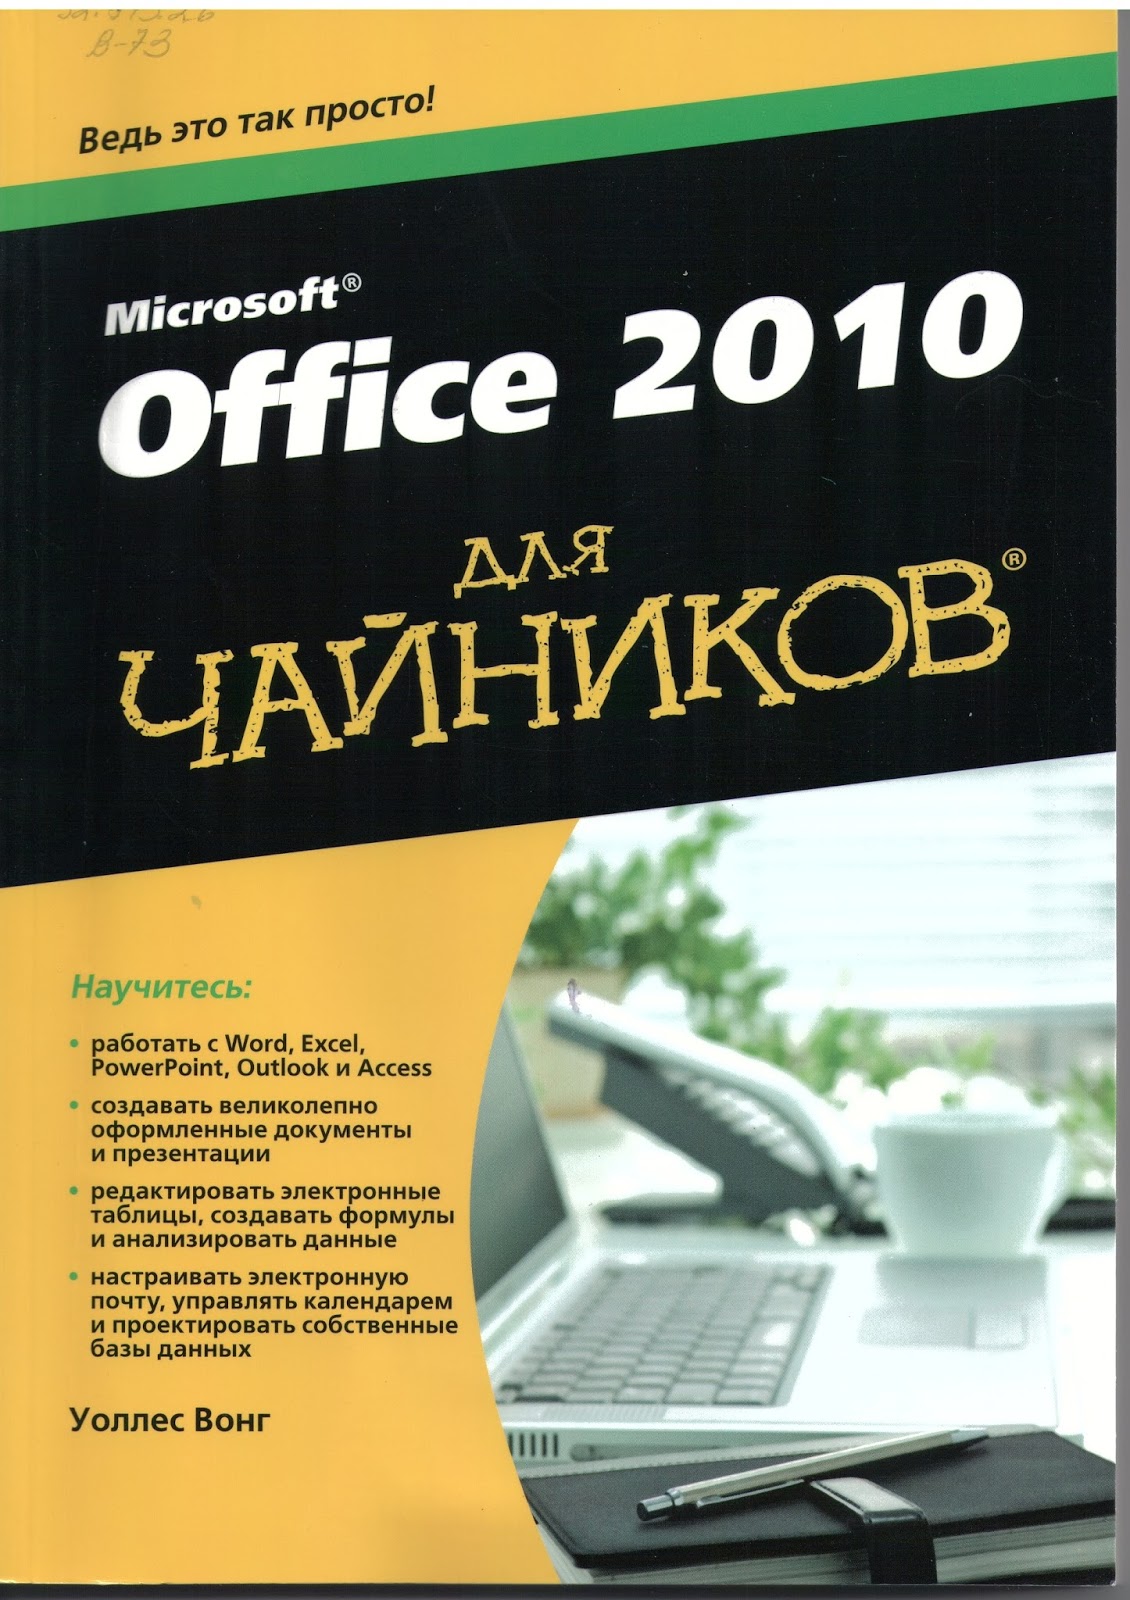 Microsoft Office 2010 Чайники Скачать